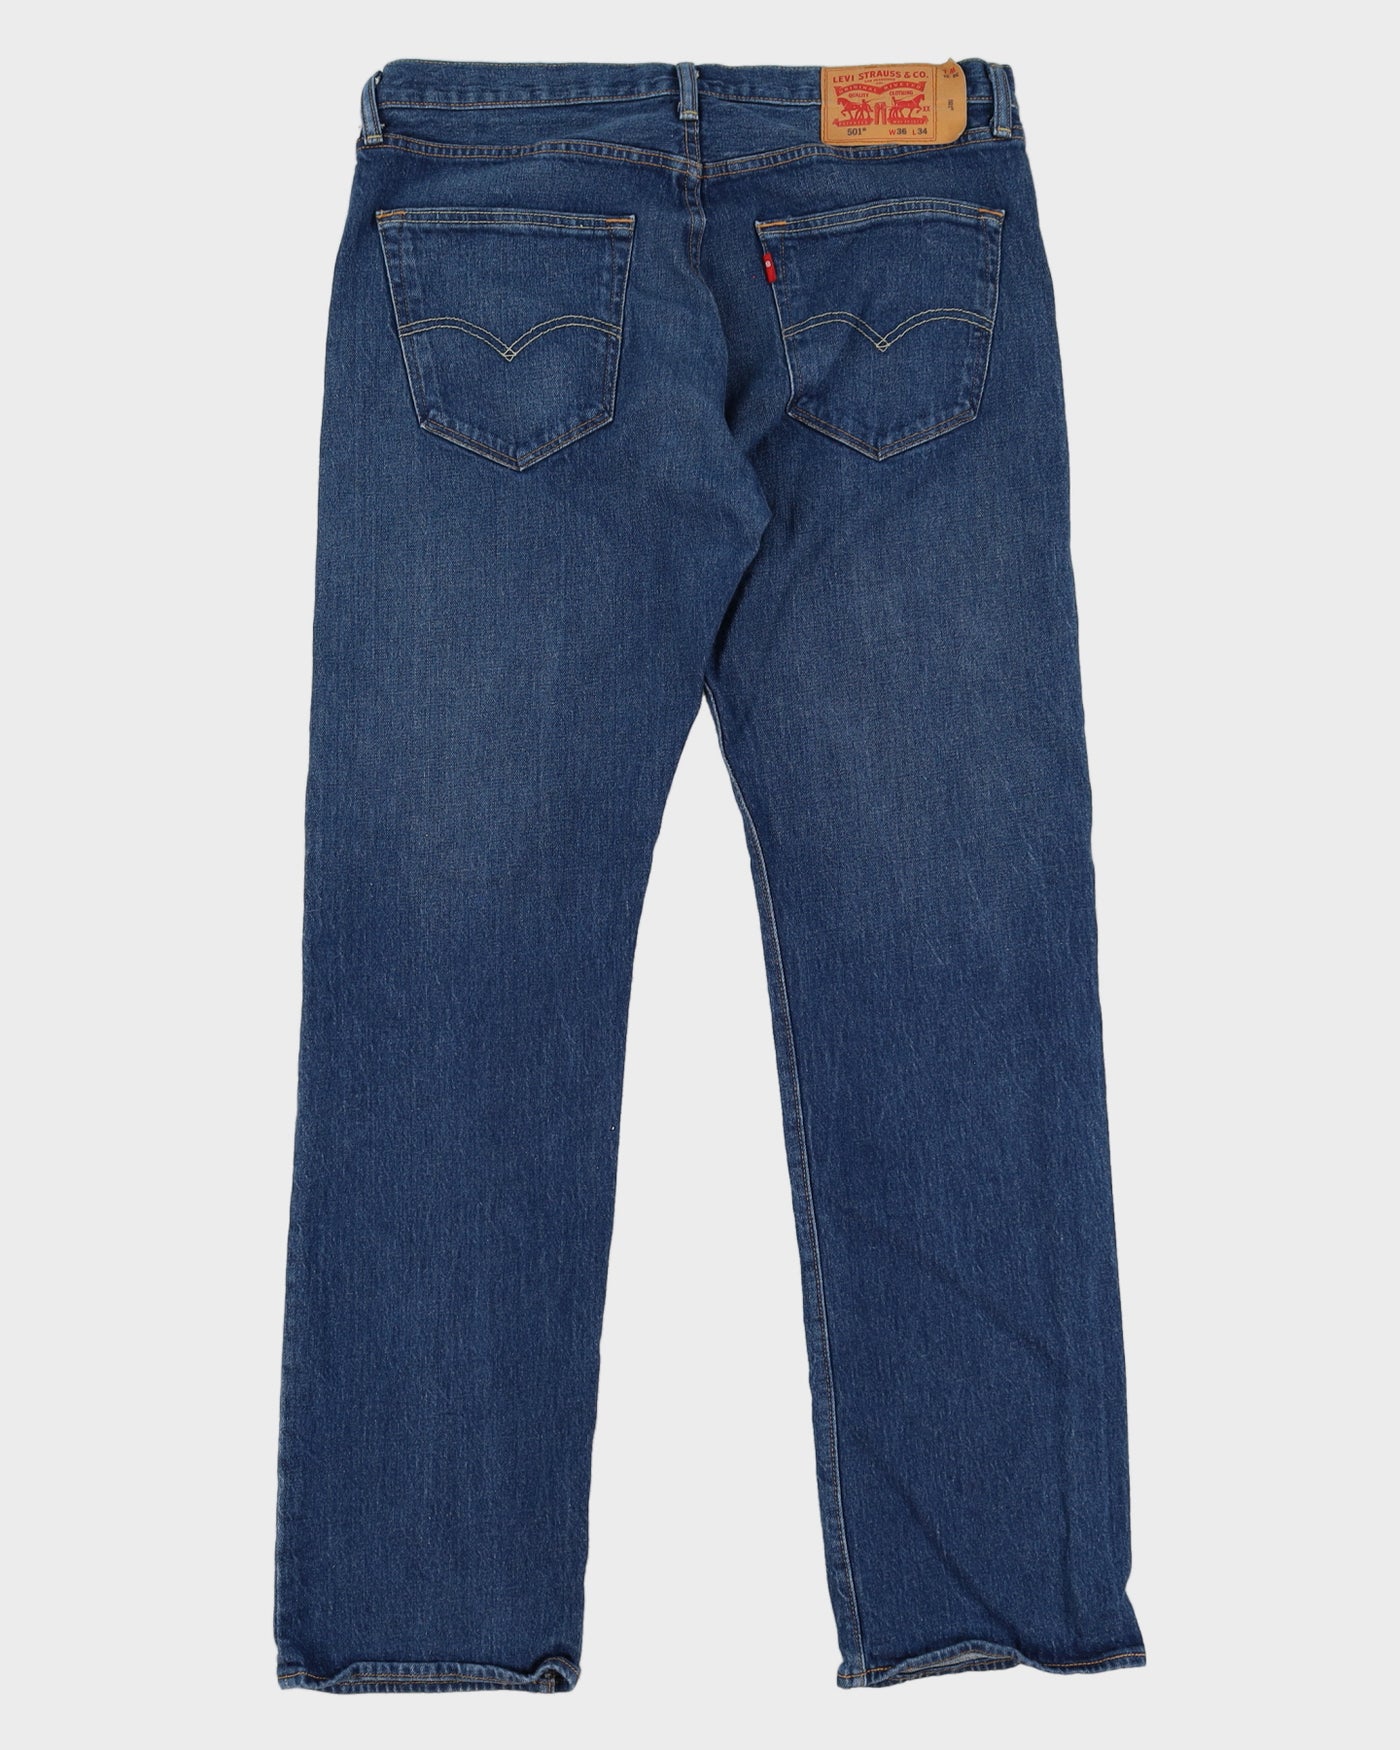 Levi's 501 Blue Jeans - W36 L34